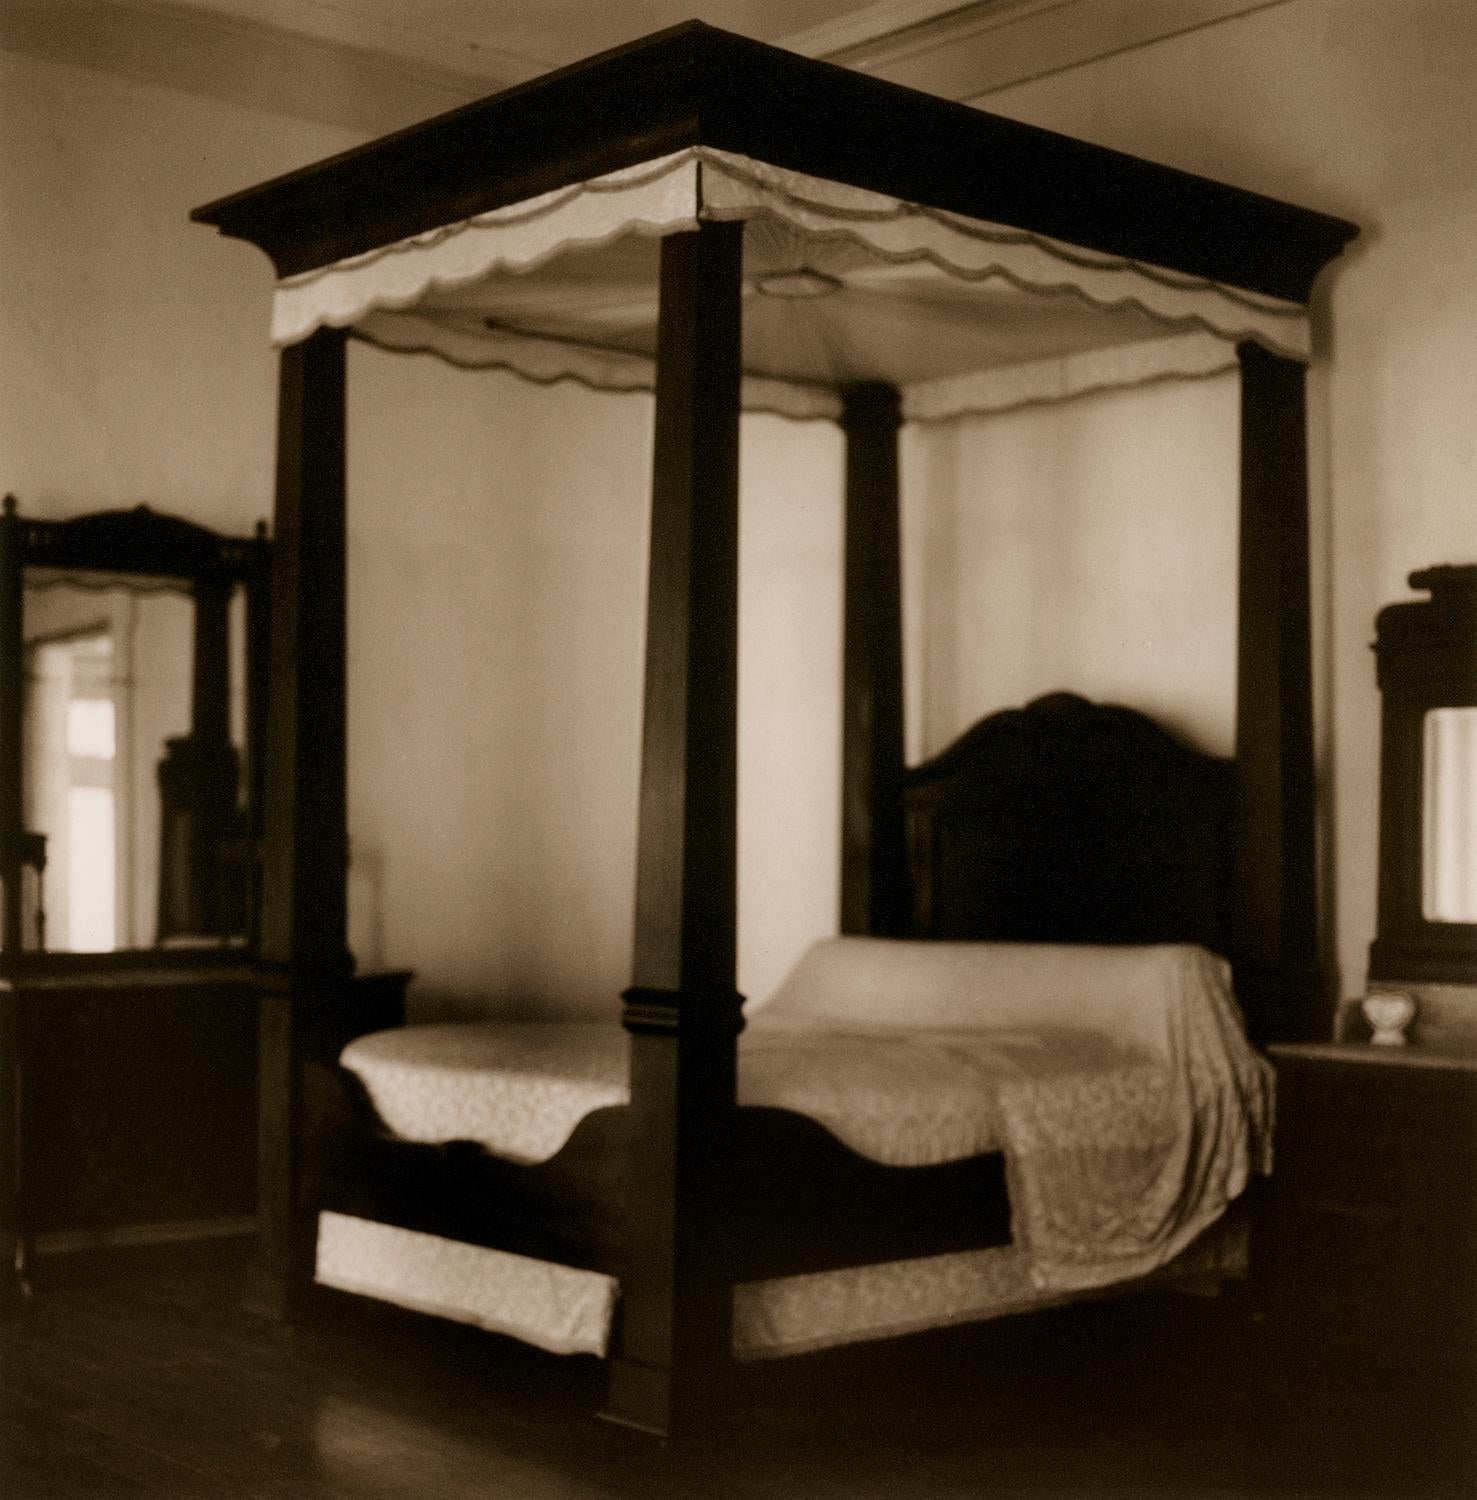 David Halliday Black and White Photograph – Bett (Sepia getöntes Stillleben Foto von Mahagoni-Baldachinbett mit Spitzenbettbezug)